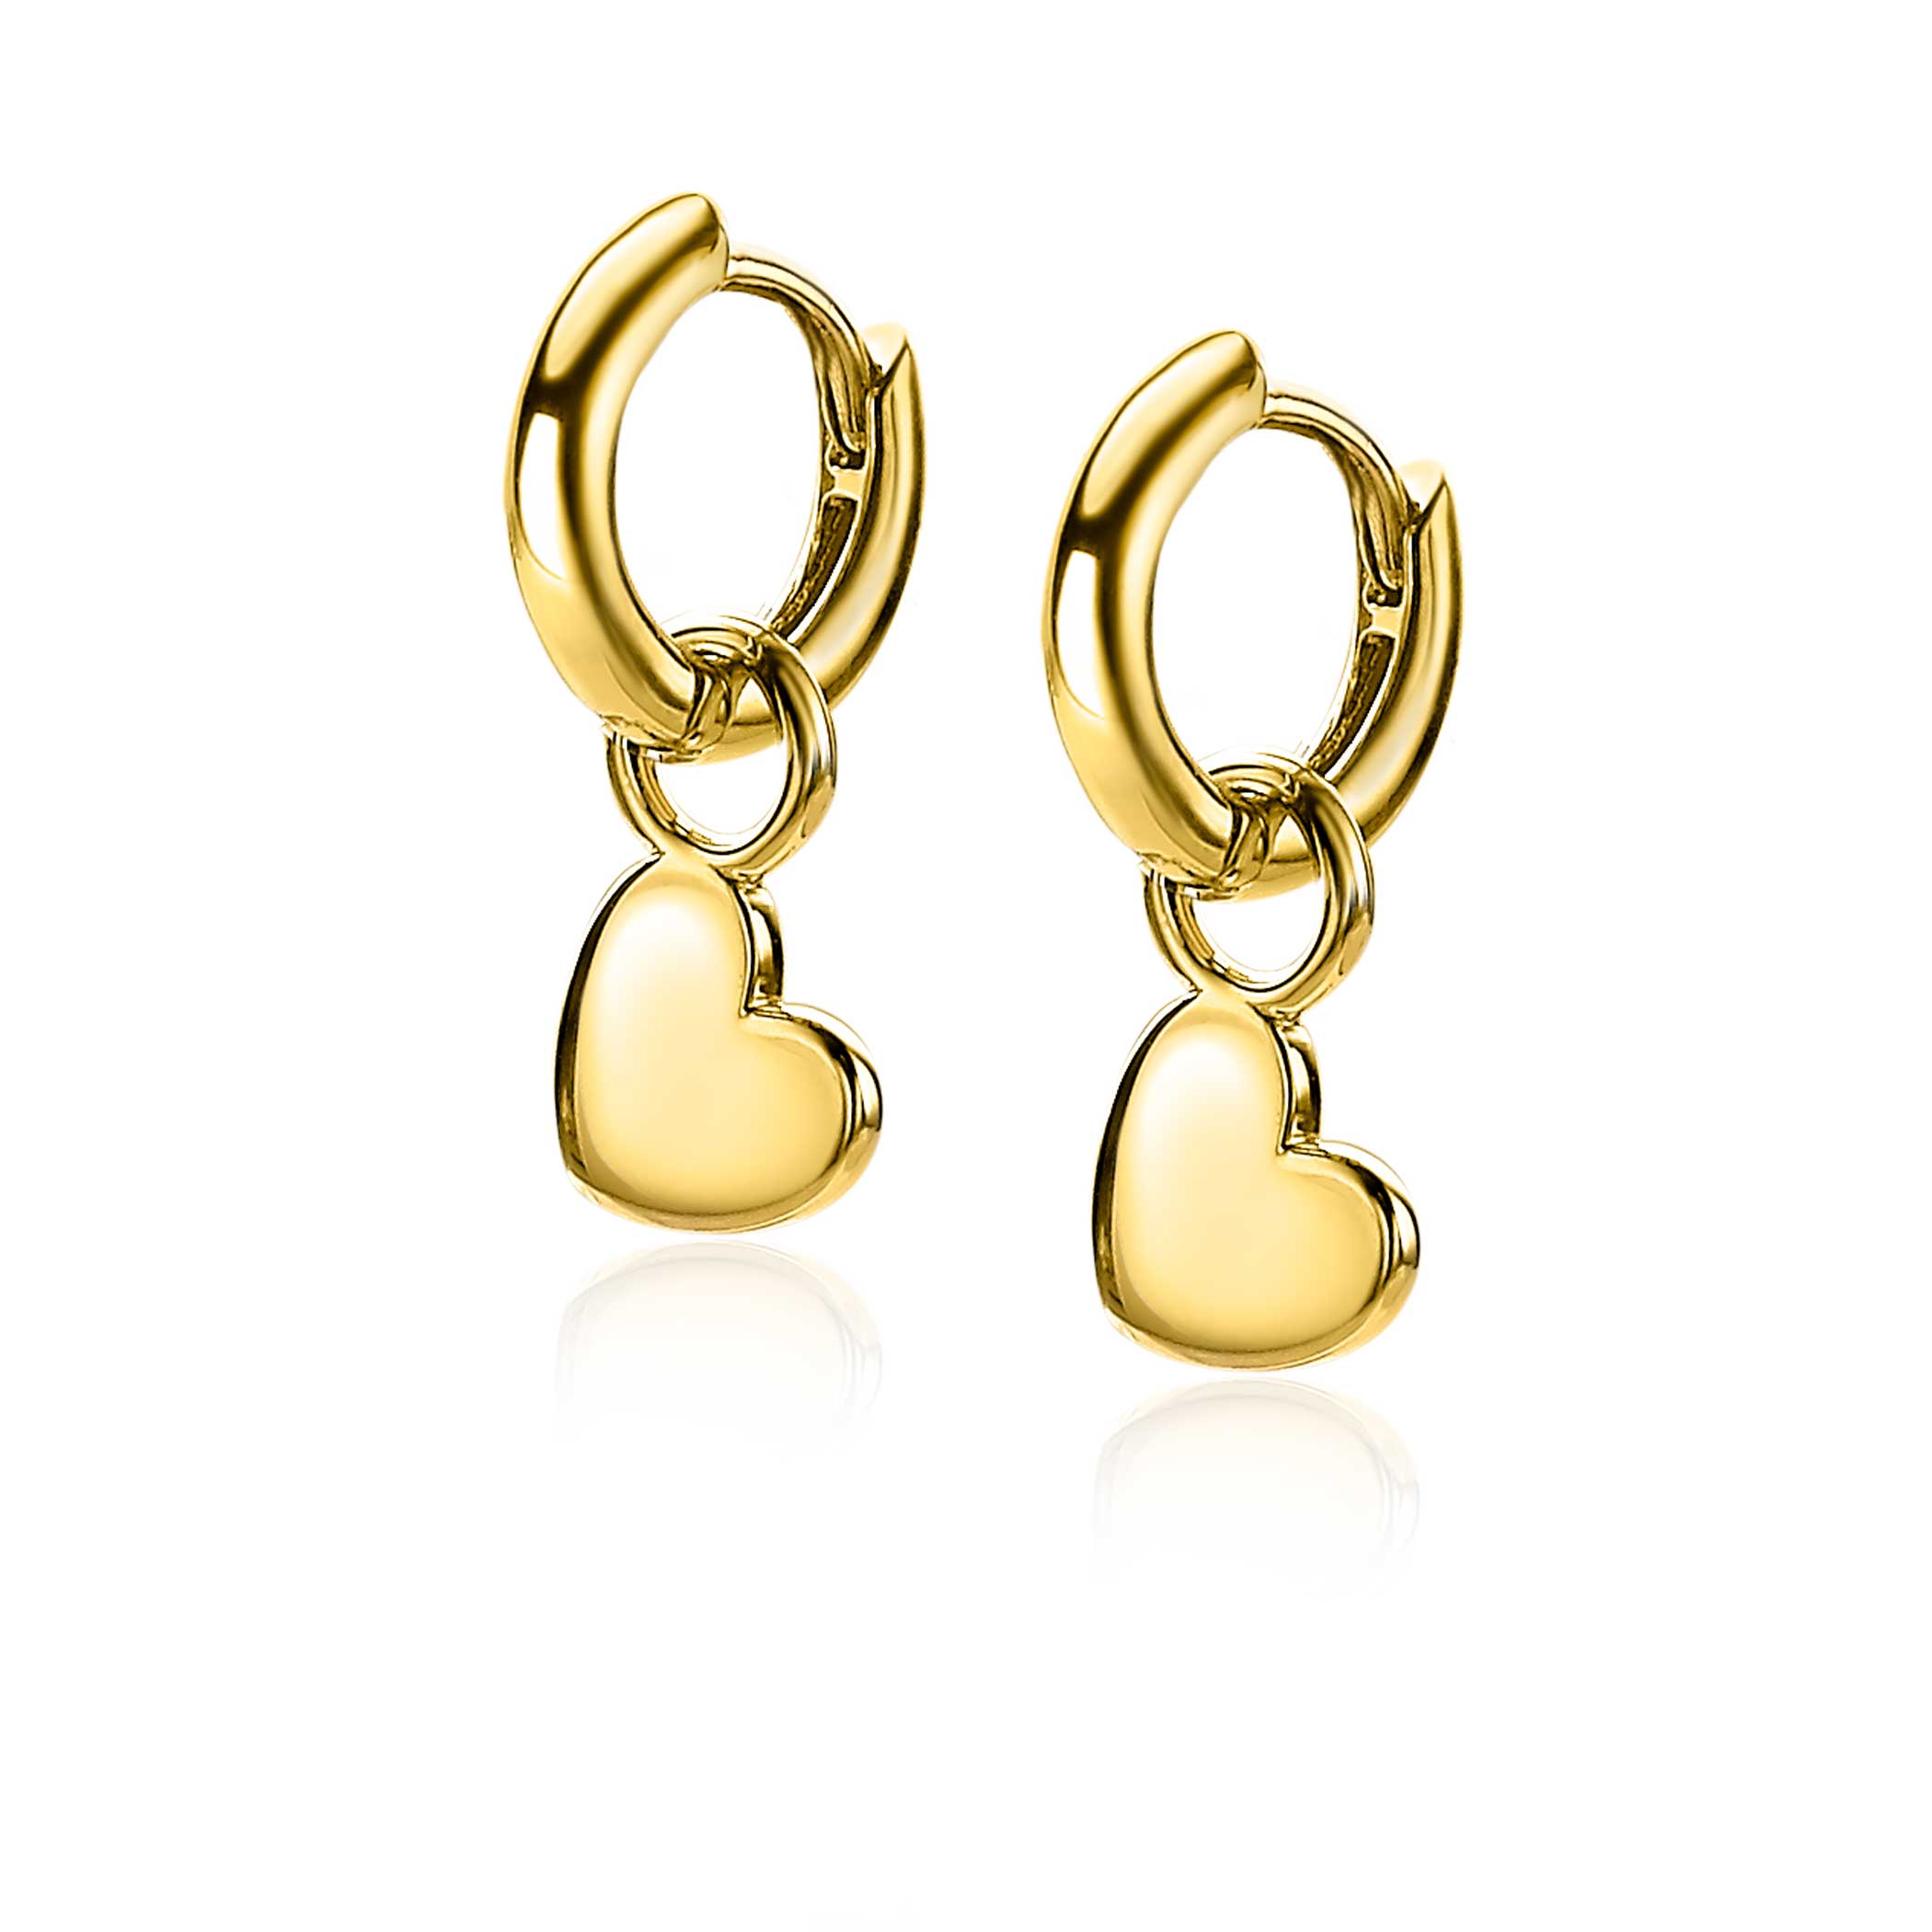 ZINZI Gold Plated Sterling Silver Earrings Pendants Heart 8mm ZICH1826G (excl. hoop earrings)